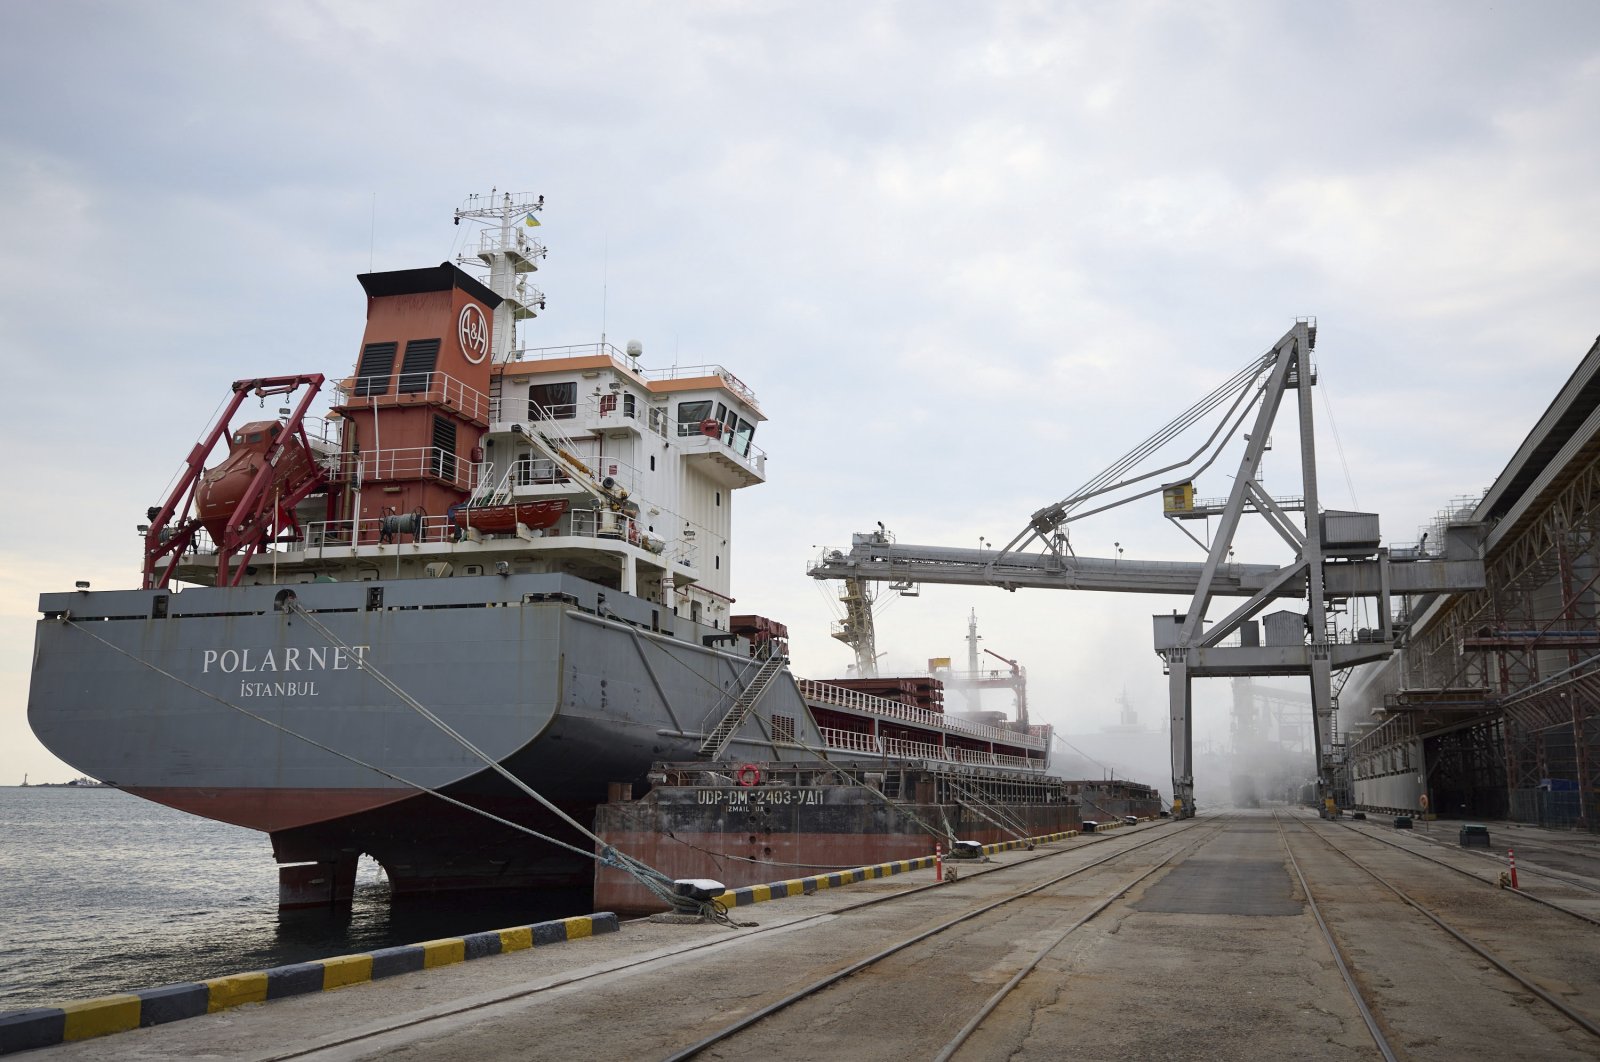 A Turkish Polarnet cargo ship is loaded with Ukrainian grain in a port in the Odessa region, Ukraine, July 29, 2022. (Ukrainian Presidential Press Office via AP)